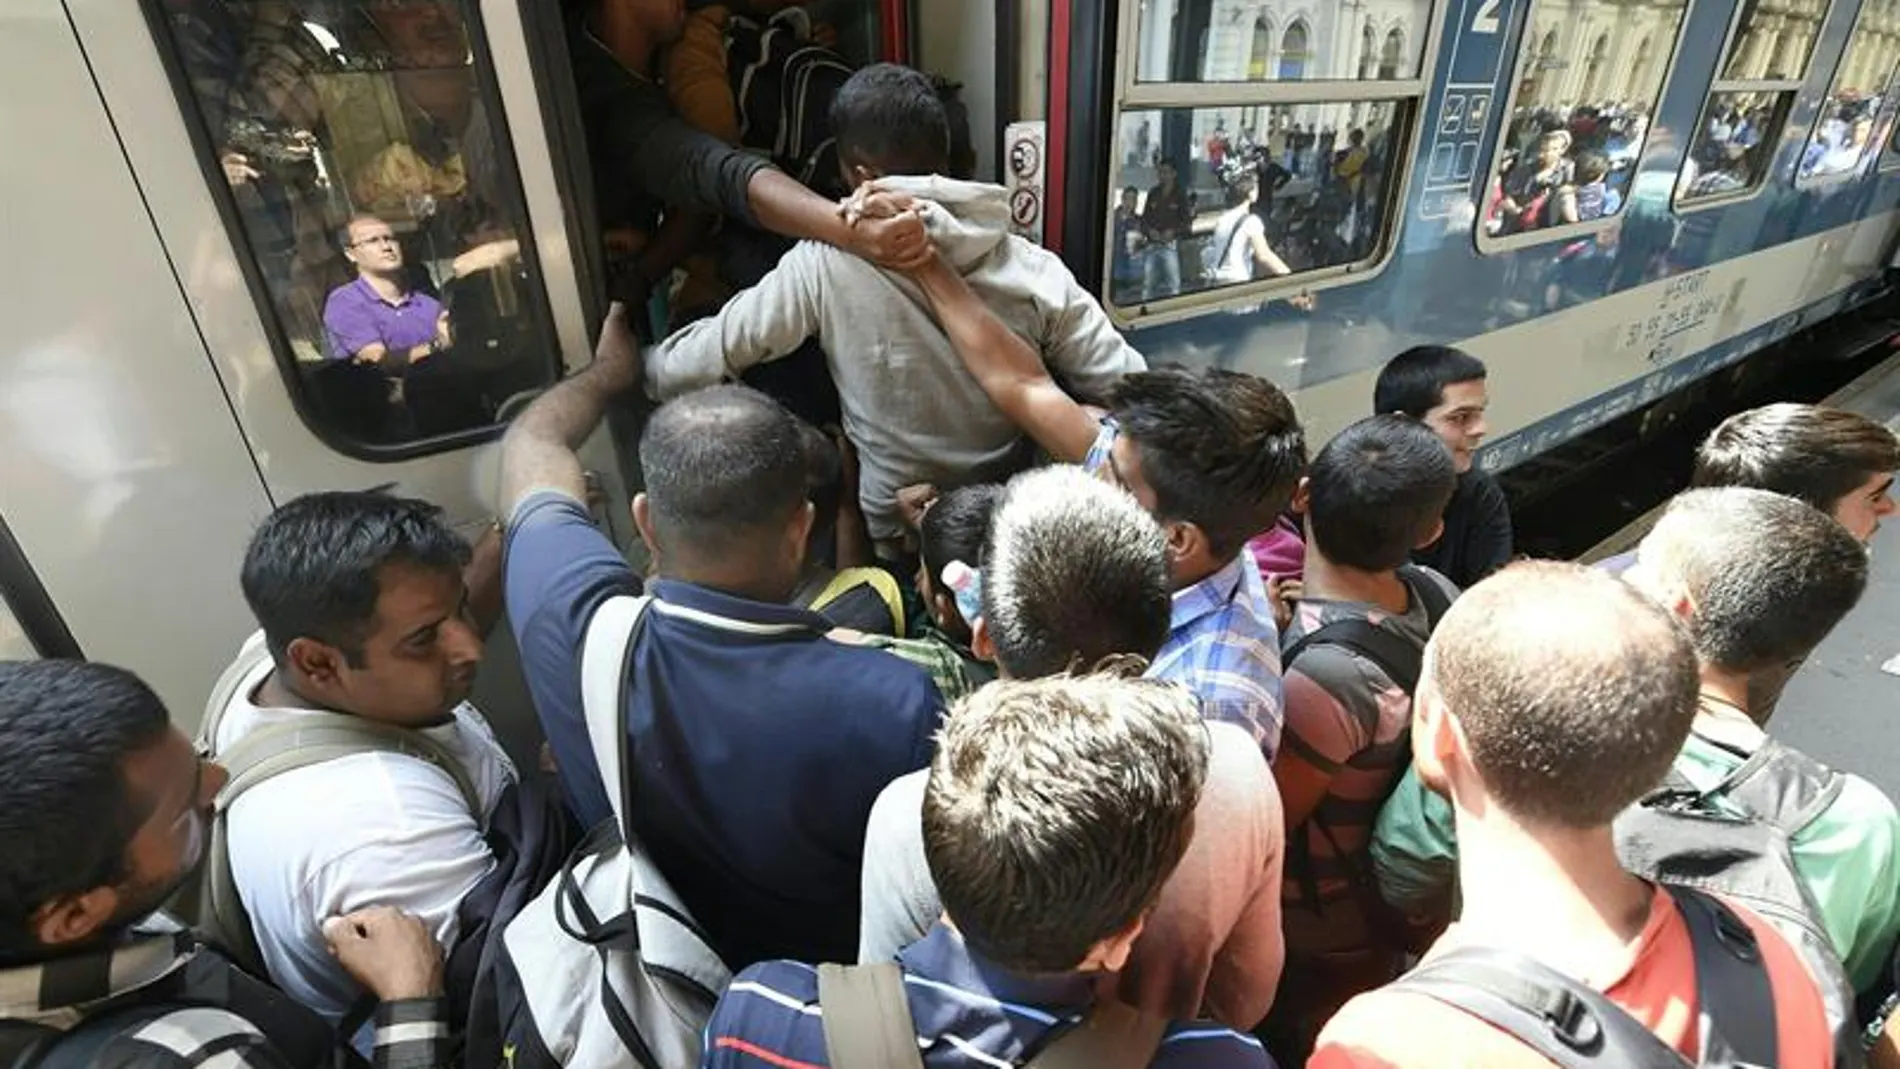 Inmigrantes subiendo a un tren en Hungría